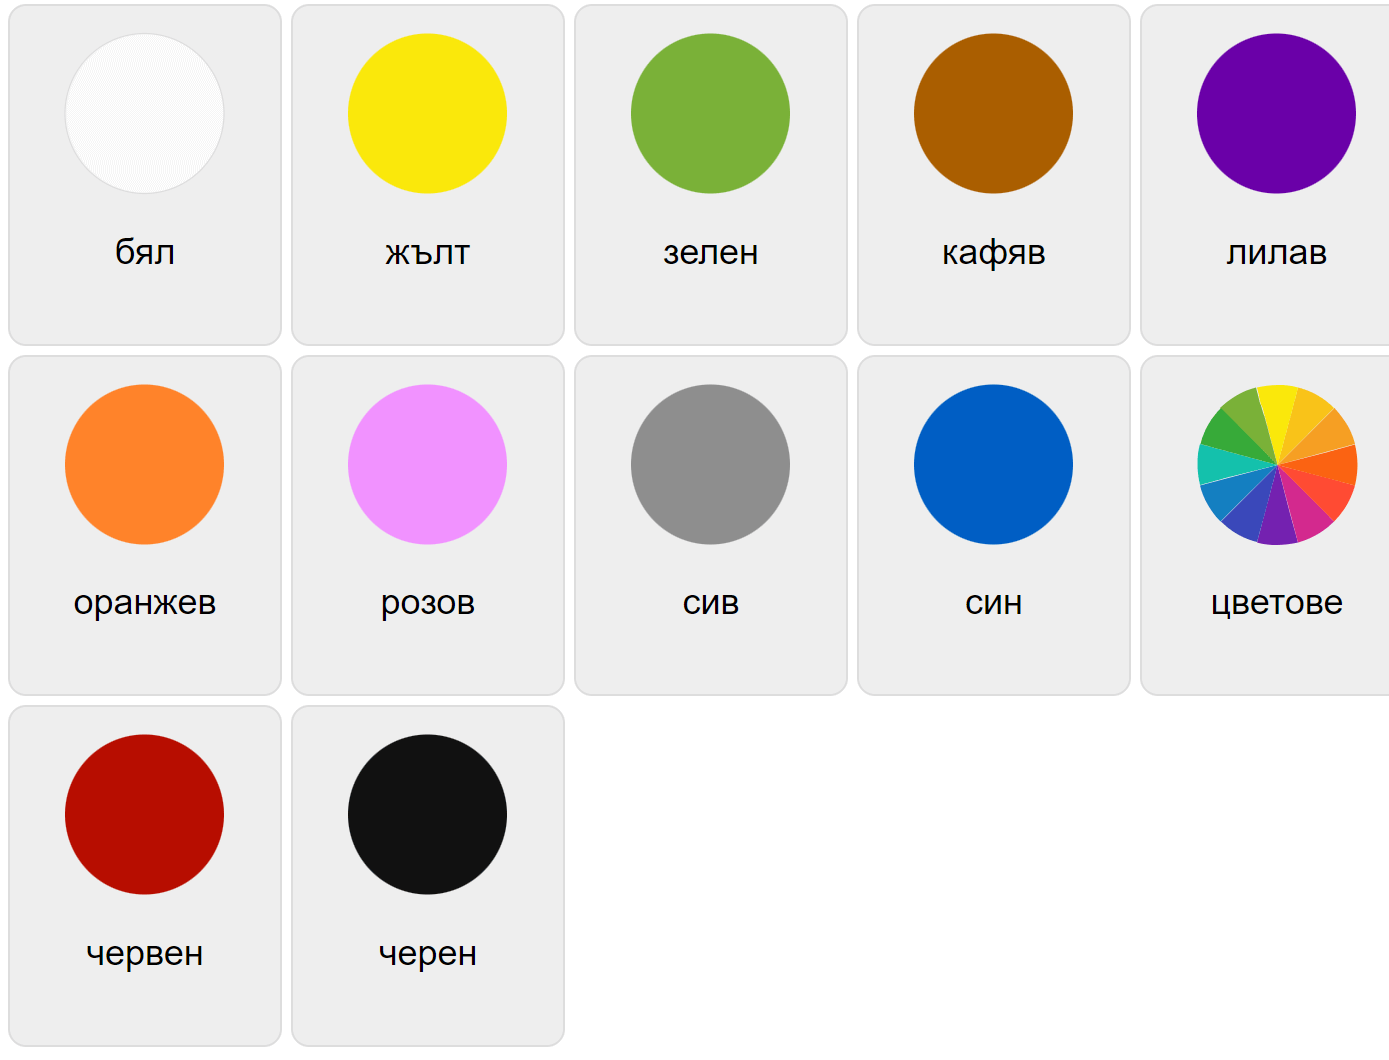 Colors in Bulgarian